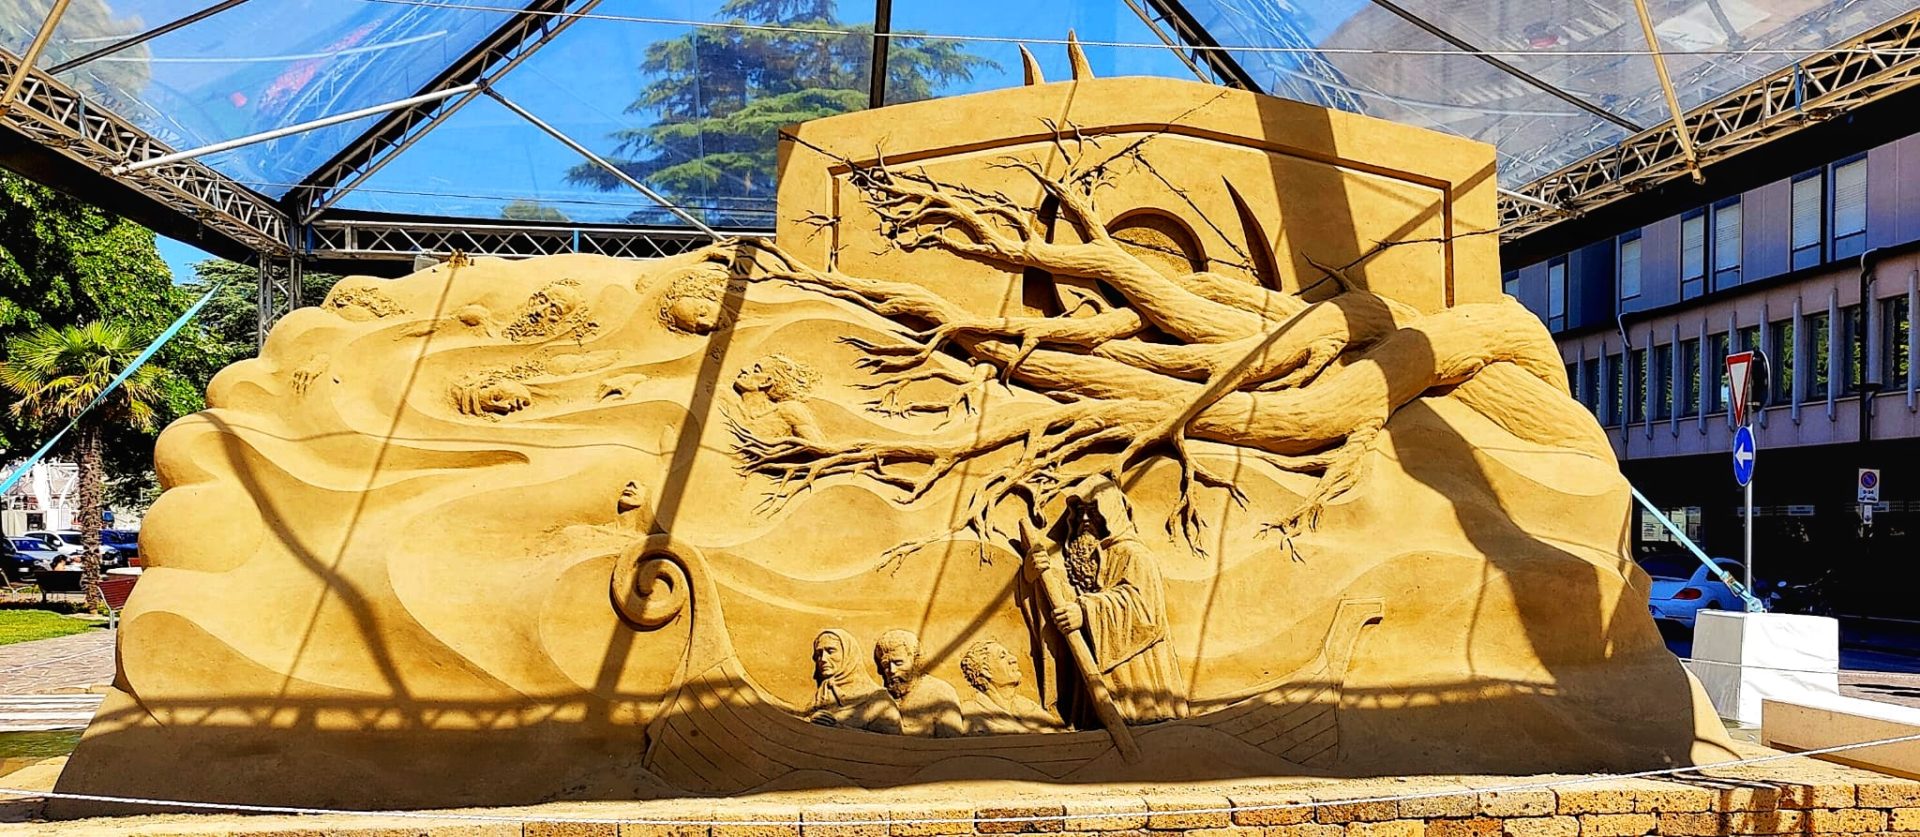 Sandskulpturen-Ausstellung Jesolo 2022 - Bild 1